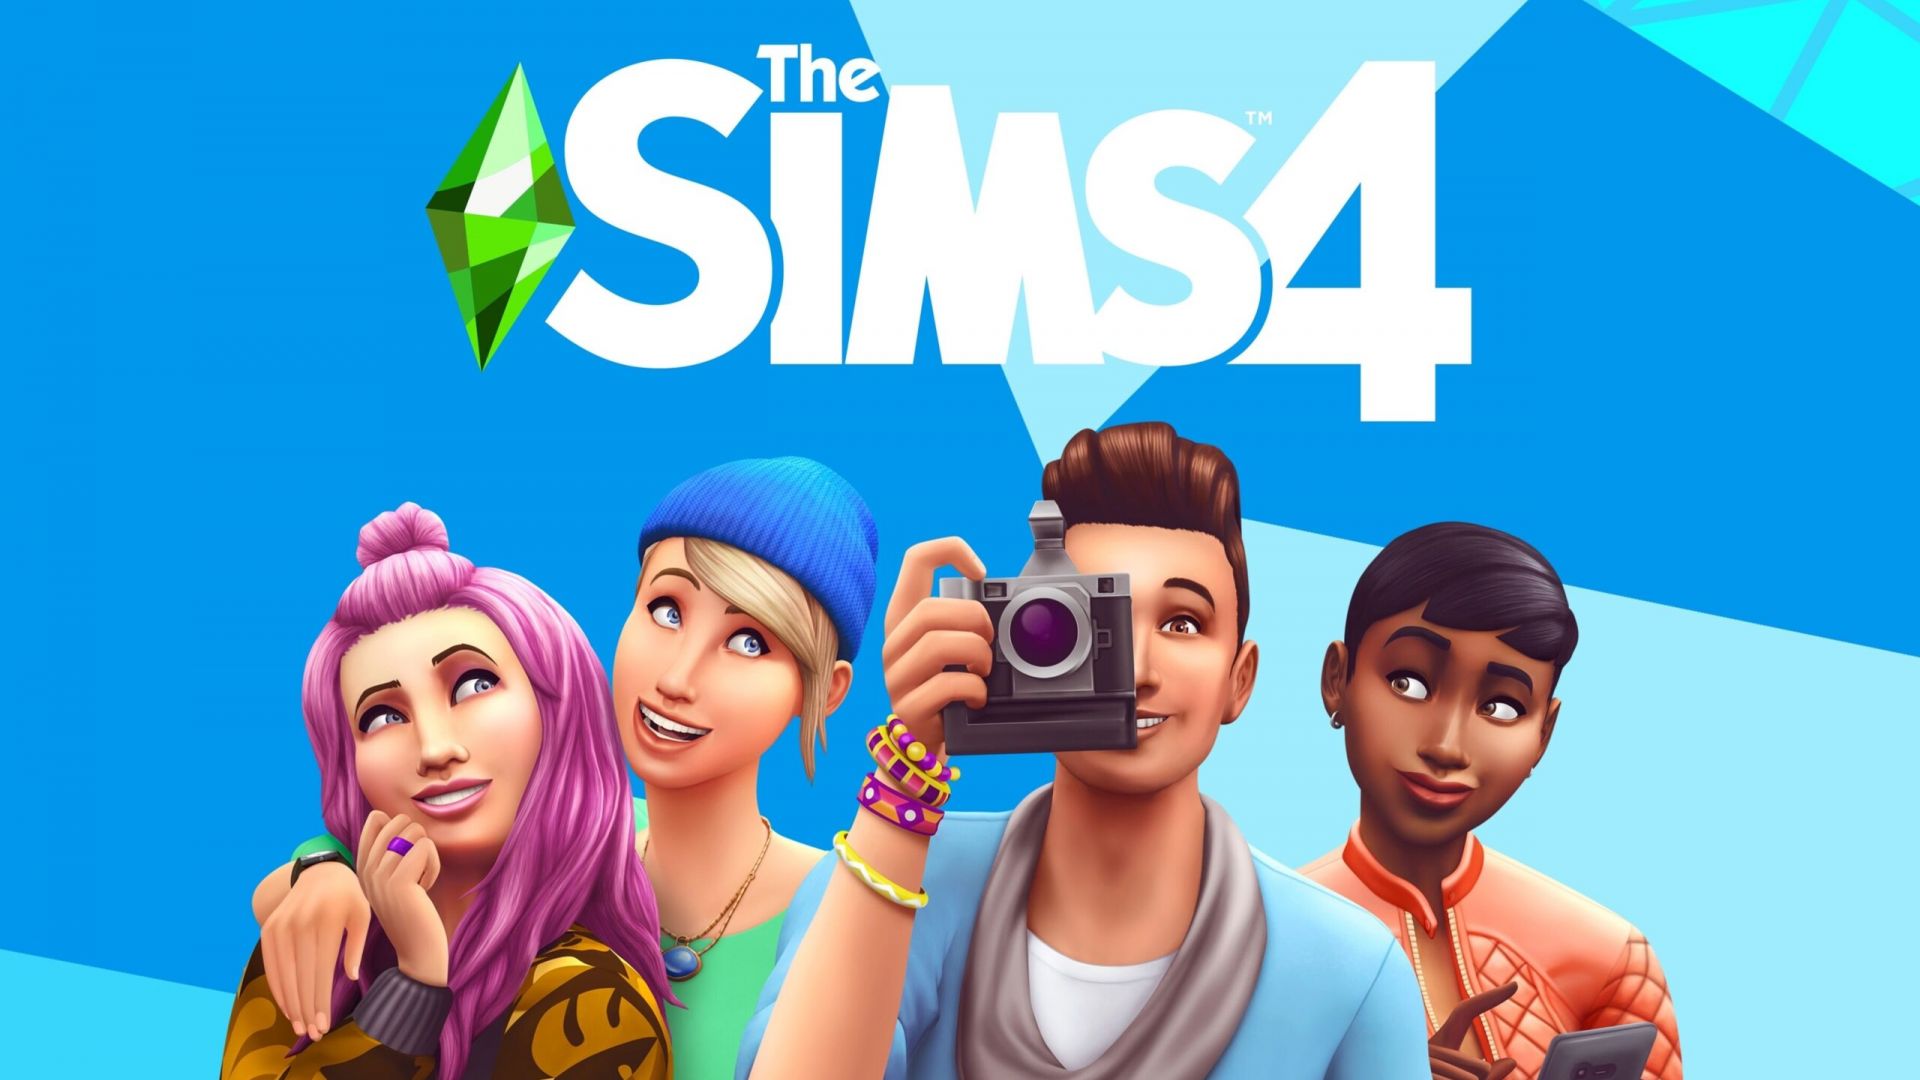 Les Sims 4 : du nouveau contenu gratuit disponible, profitez-en